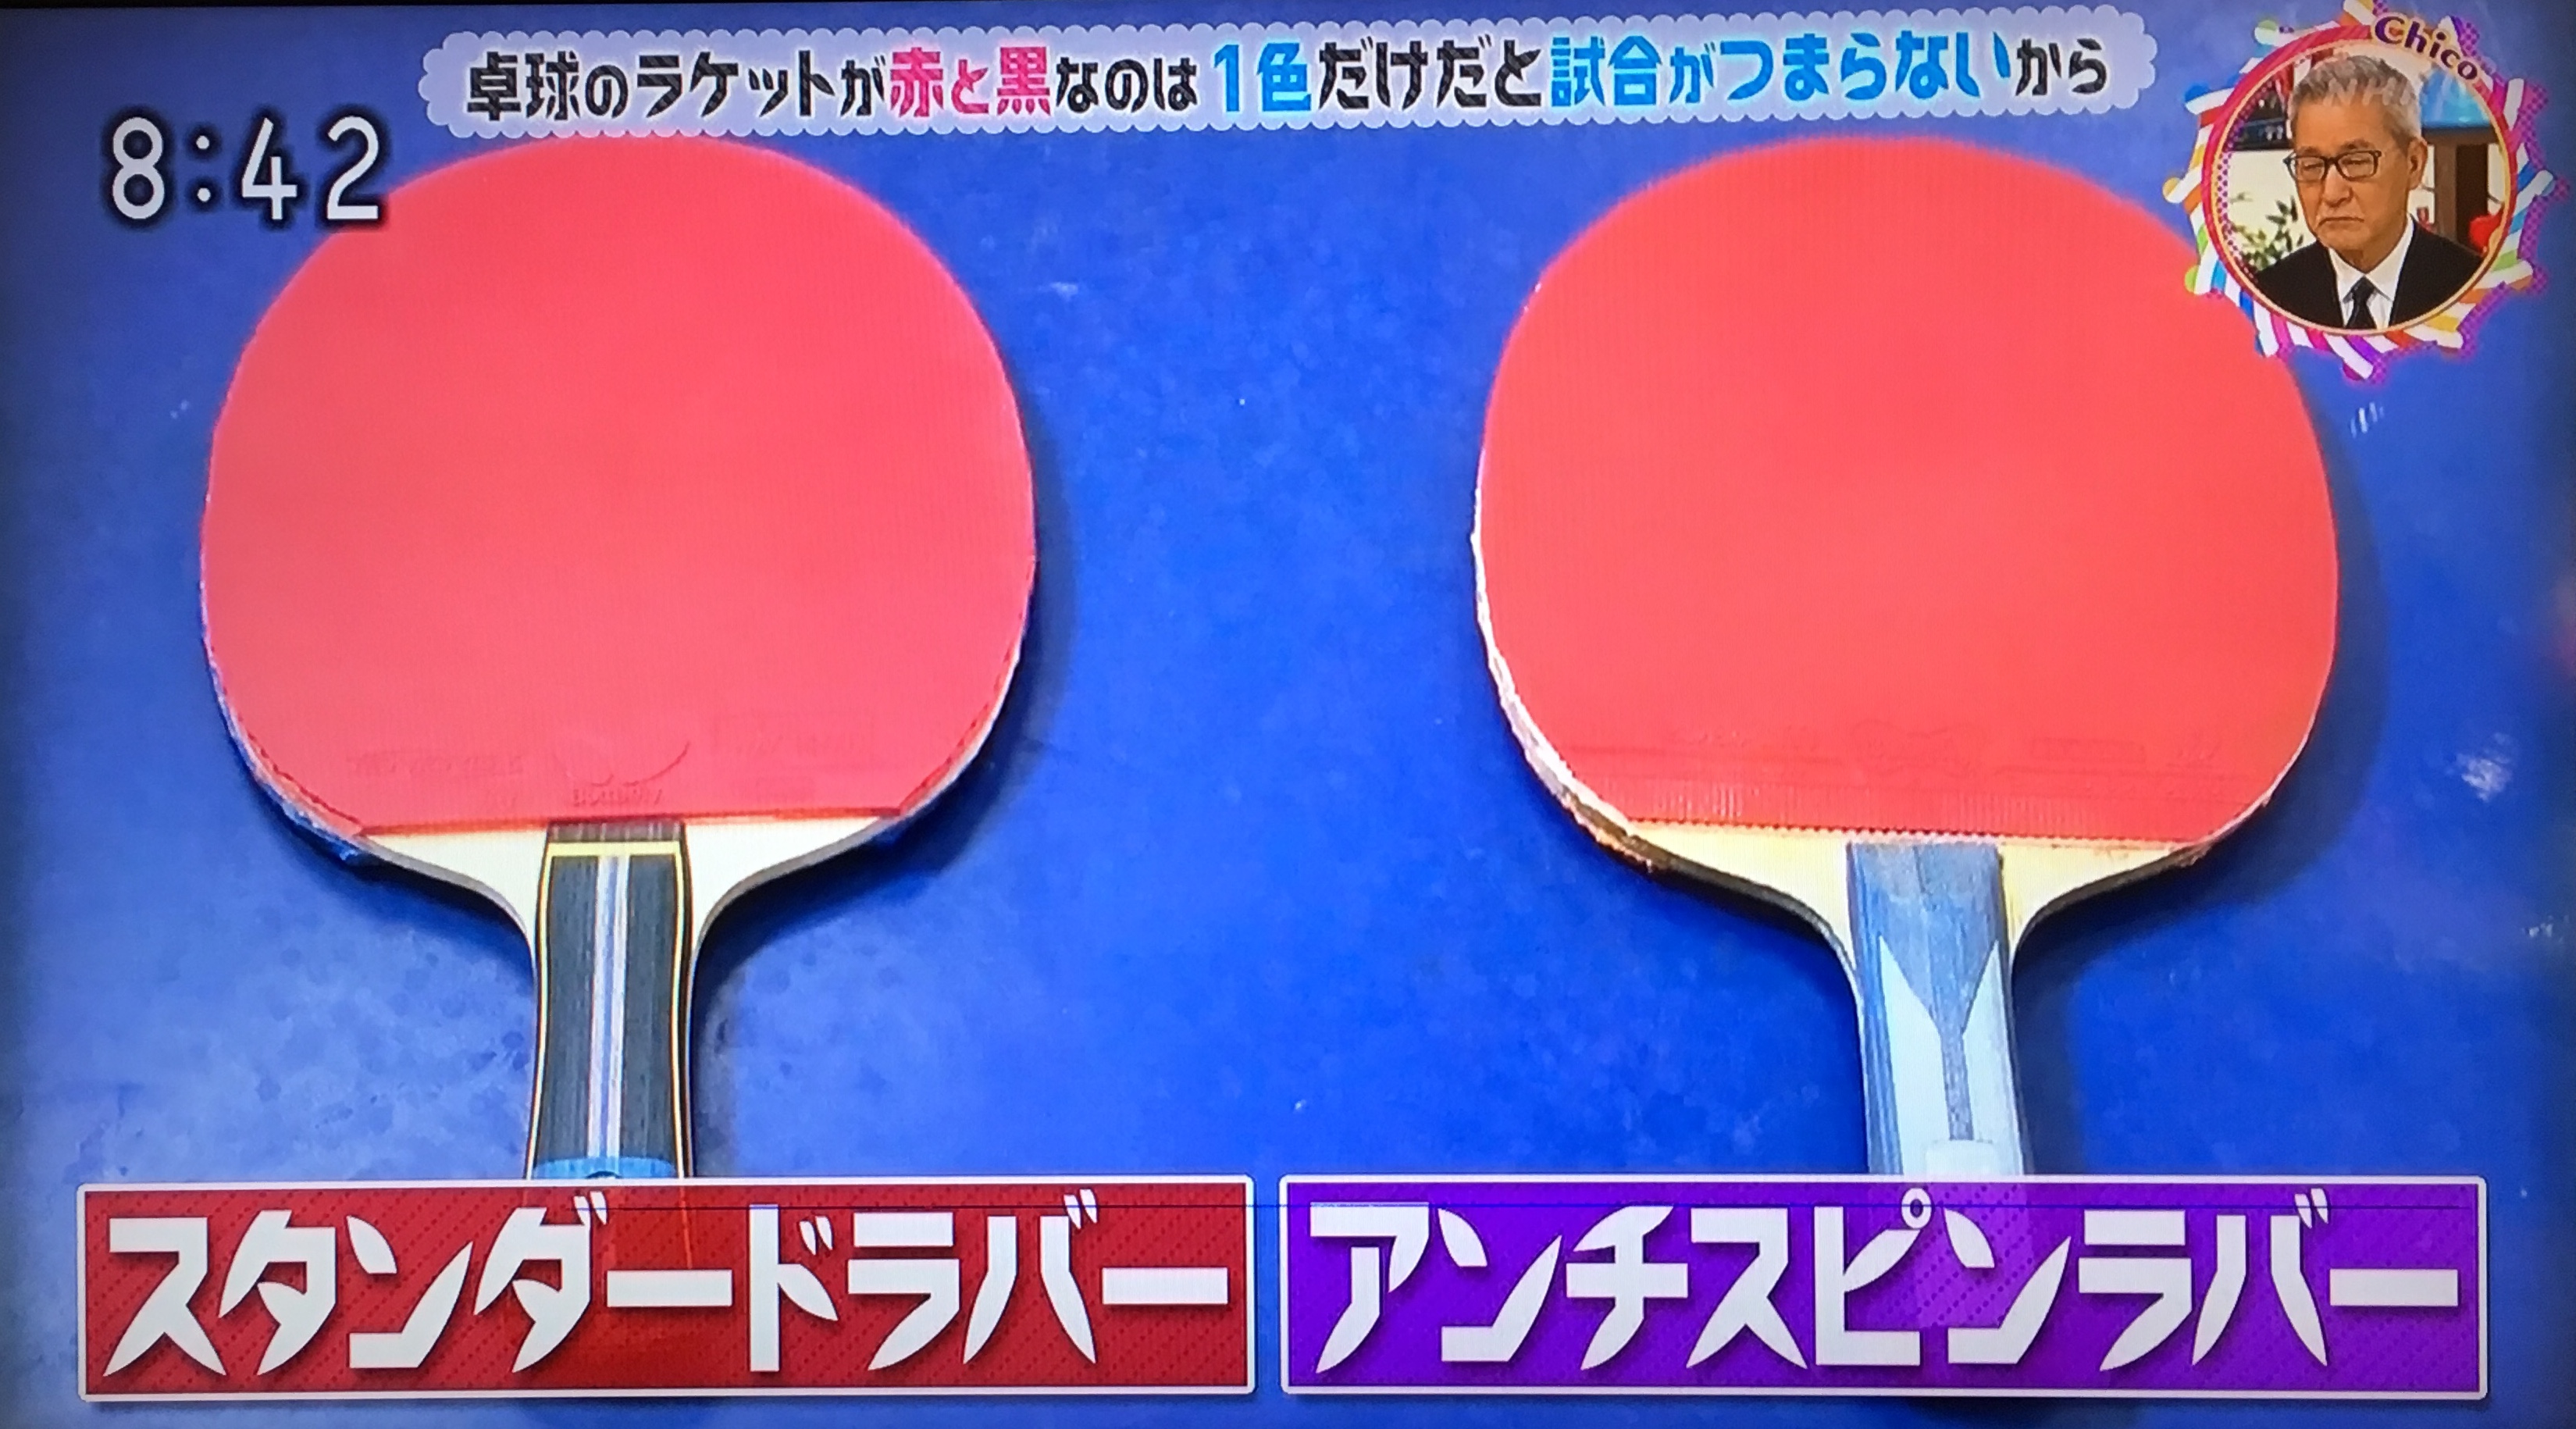 卓球のラケットが赤と黒なのはなぜ?→1色だけだと試合がつまらないから。スピン、アンチで色を使い分けるルール | チコちゃんに叱られる！